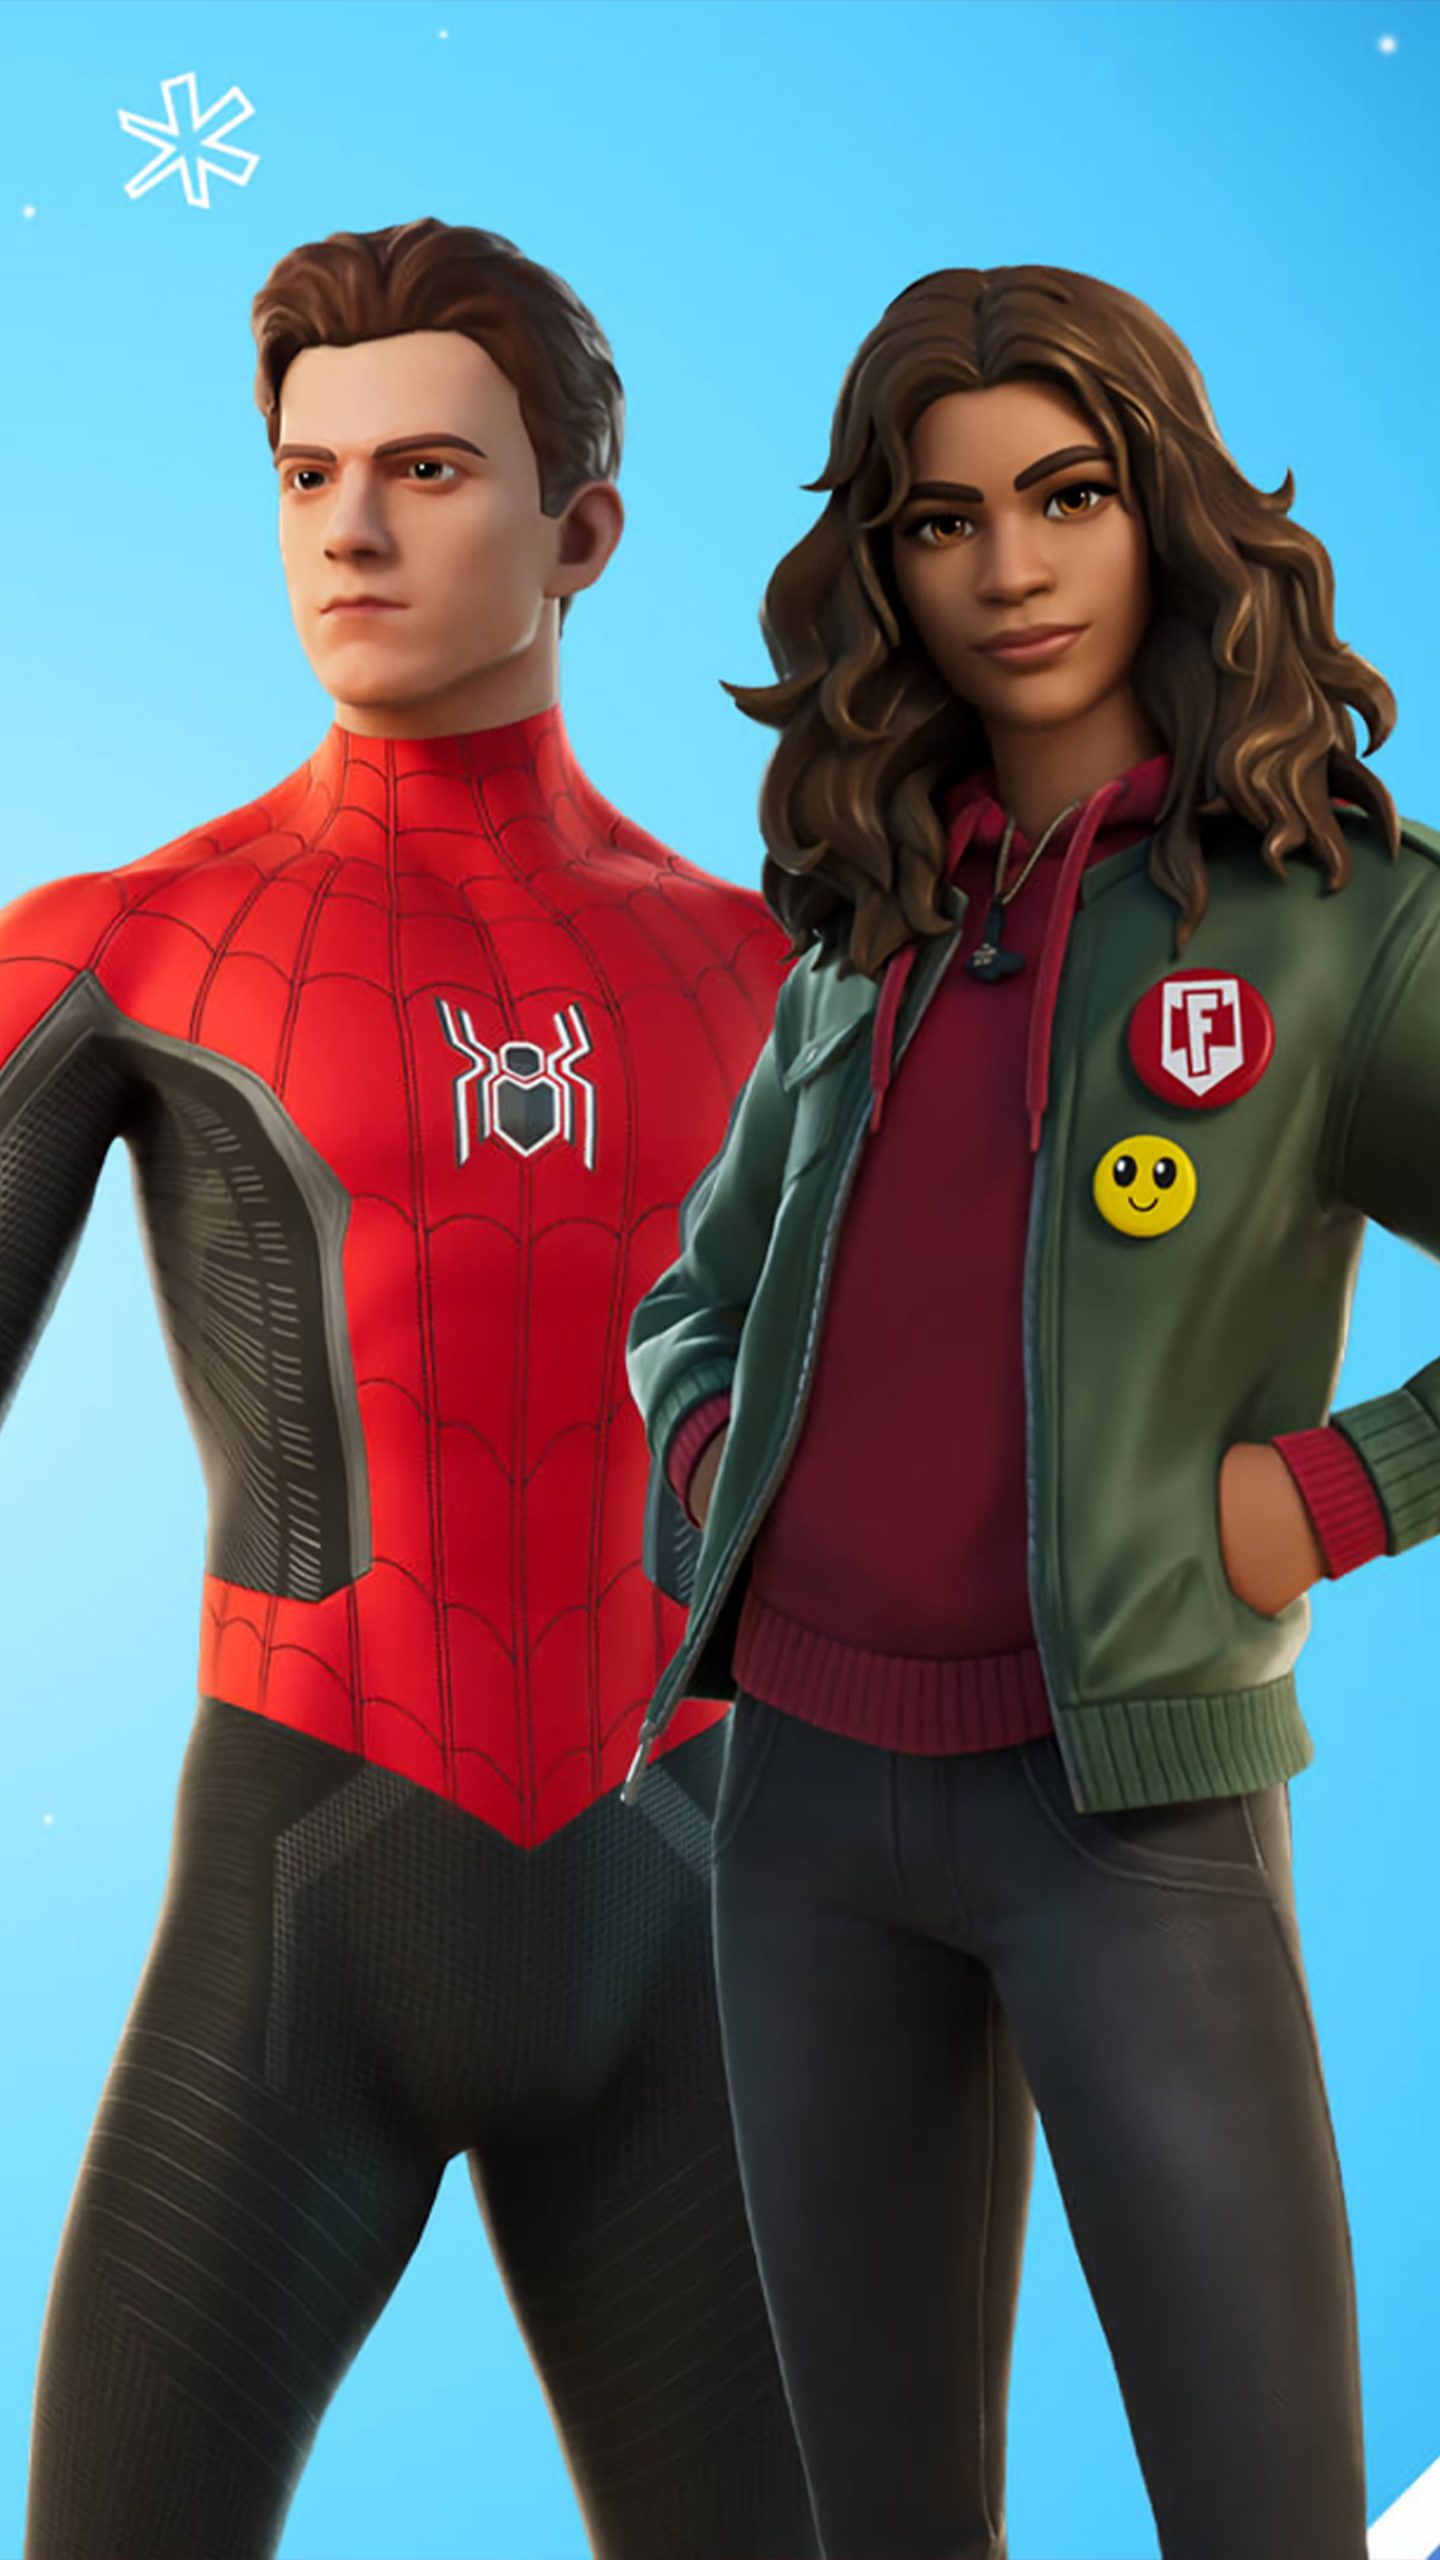 Một phiên bản rất đặc biệt của nhân vật Spider-Man sẽ xuất hiện trên màn hình PC của bạn! Hãy tải ngay những hình nền Marvel\'s Spider-Man PC Wallpaper - một bộ sưu tập đầy đủ các phiên bản về siêu anh hùng này từ các trò chơi Marvel\'s Spider-Man.